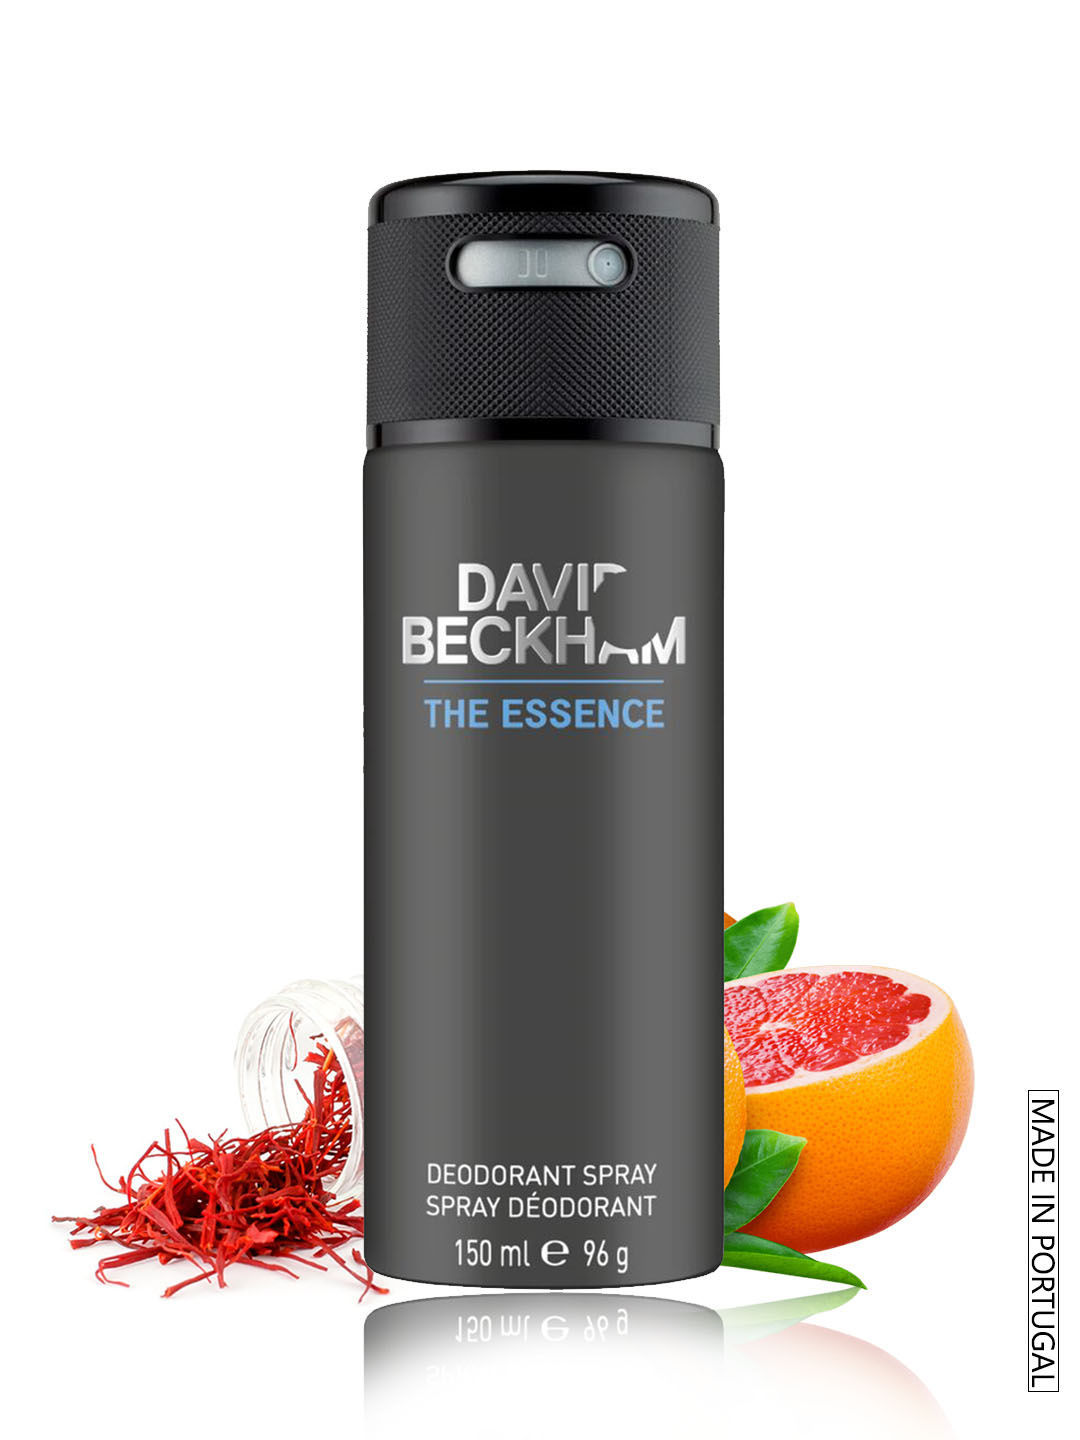 David Beckham The Essence Deodorant Spray For Men